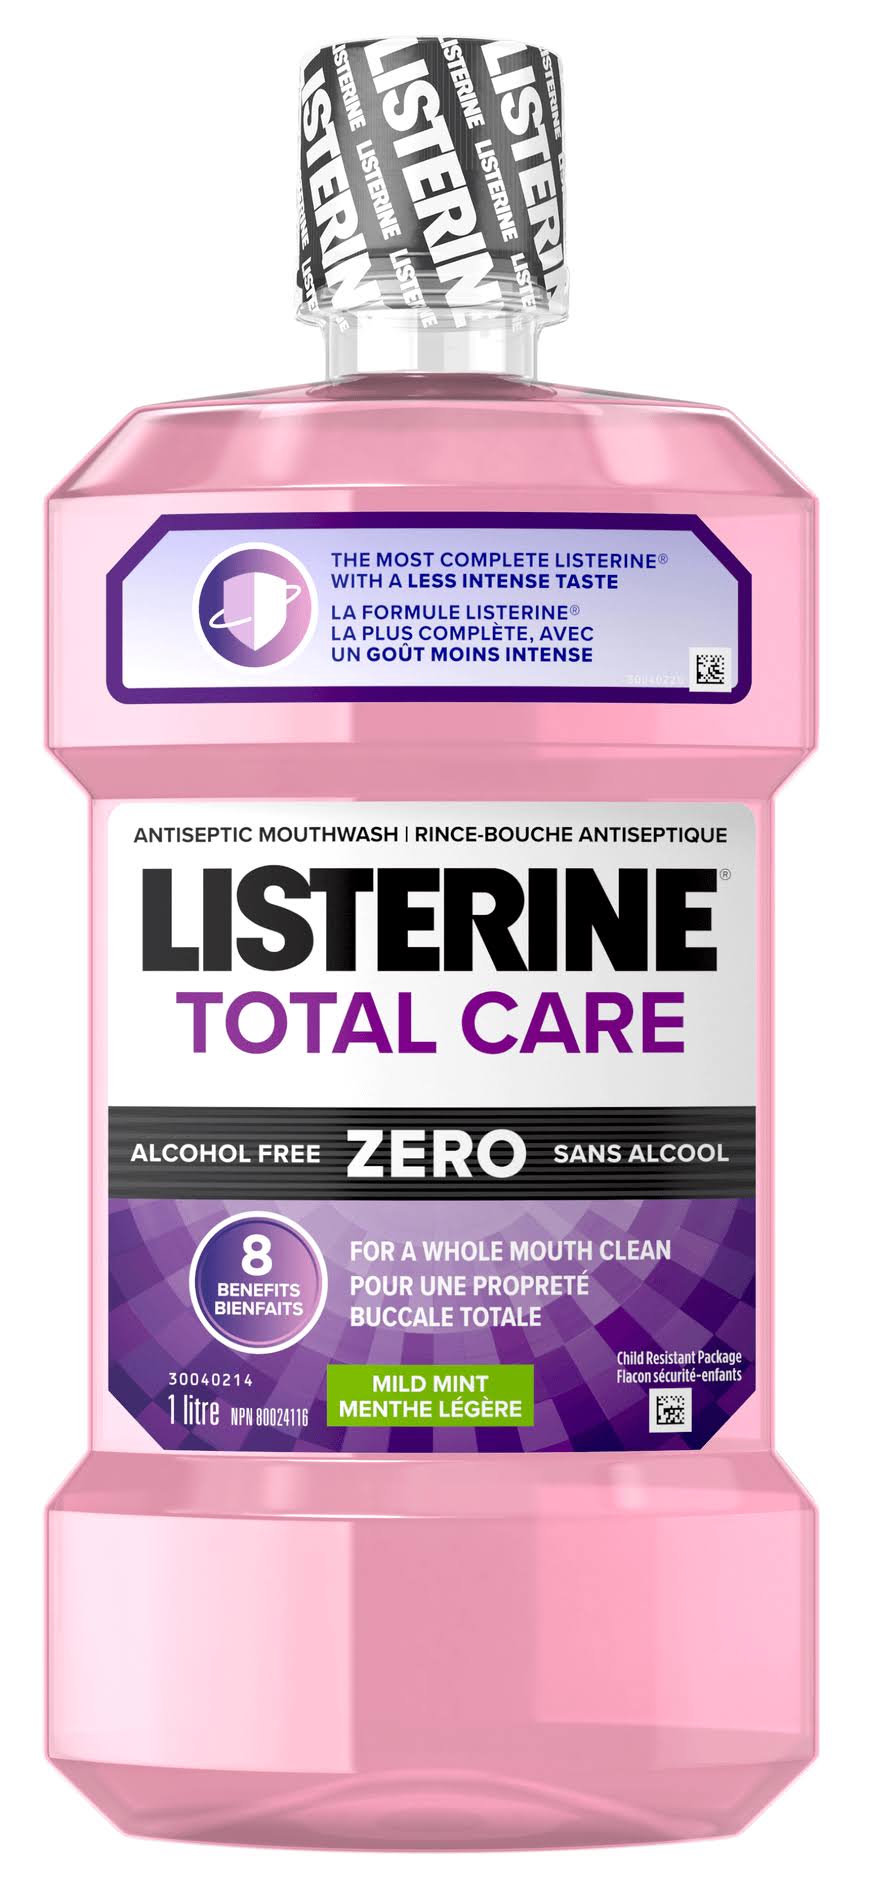 Listerine Total Care Zero Antiseptic Mouthwash - Mild Mint, 1L